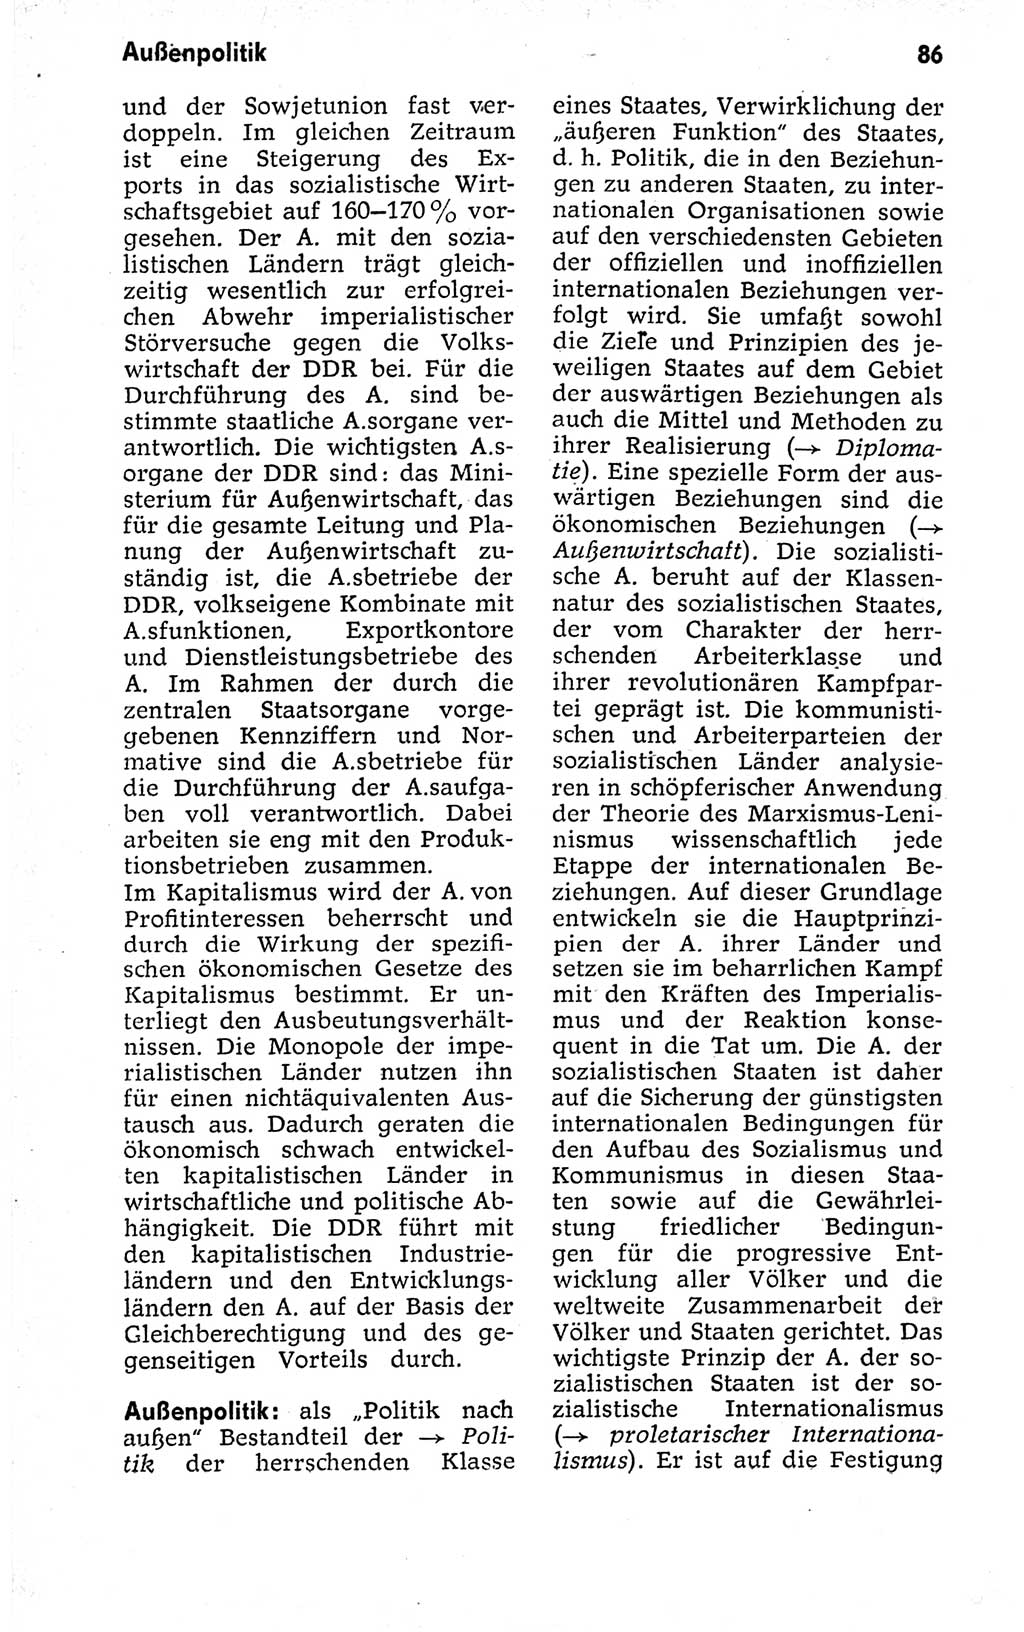 Kleines politisches Wörterbuch [Deutsche Demokratische Republik (DDR)] 1973, Seite 86 (Kl. pol. Wb. DDR 1973, S. 86)